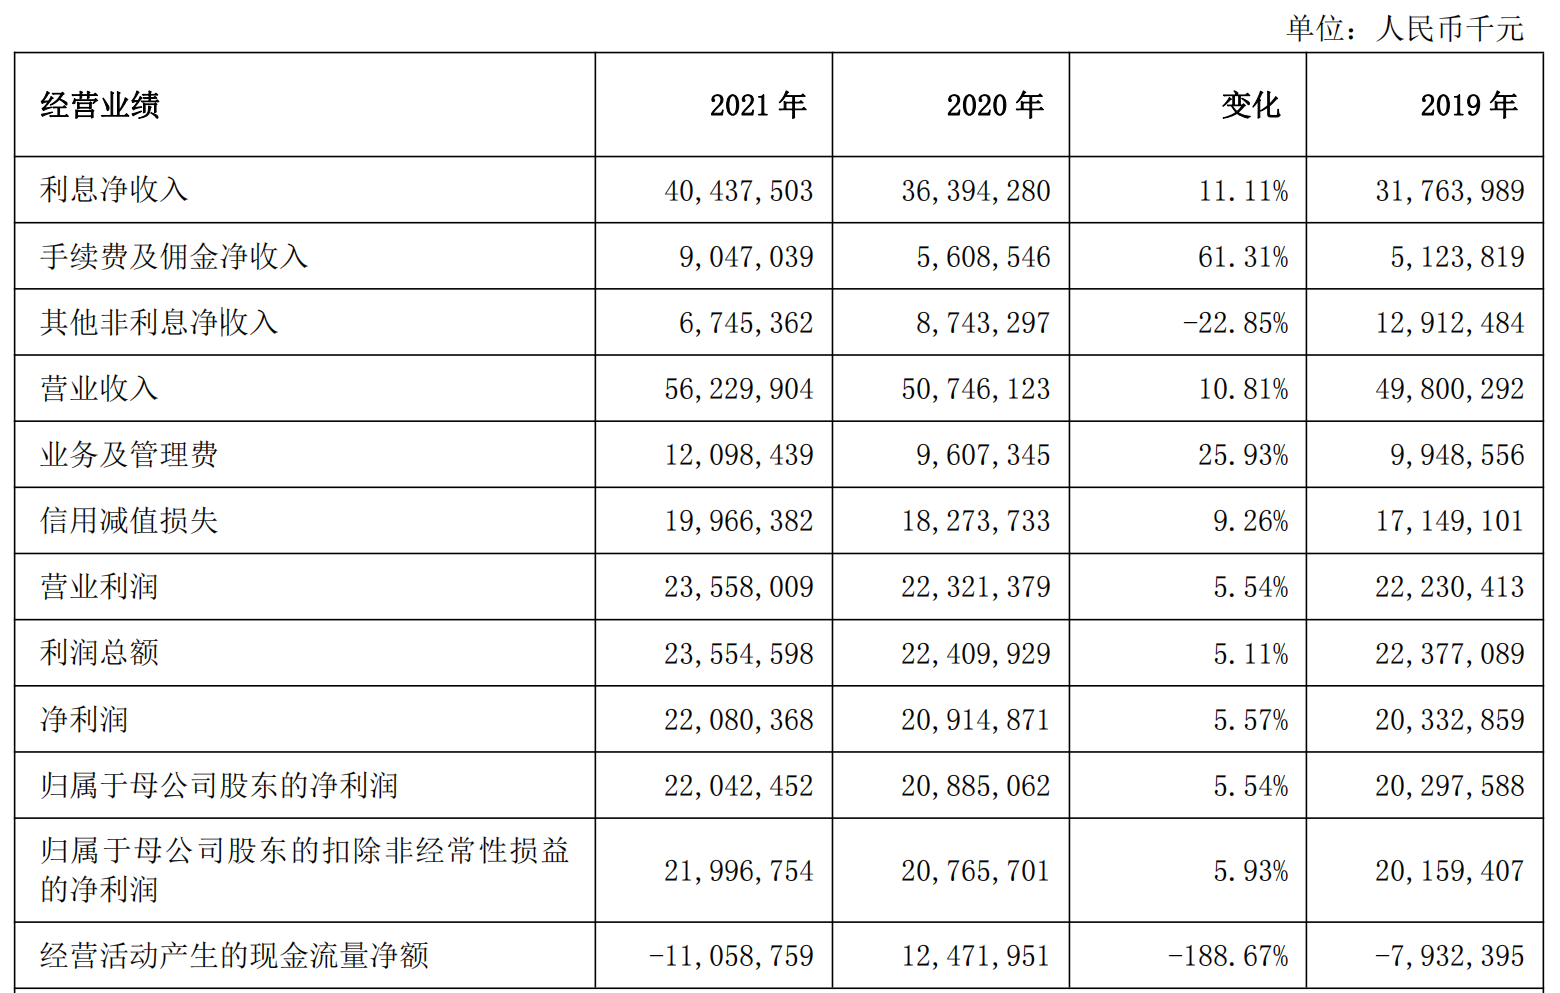 上海银行2021年集团资产总额2.65万亿元 实现利息净收入404.38亿元